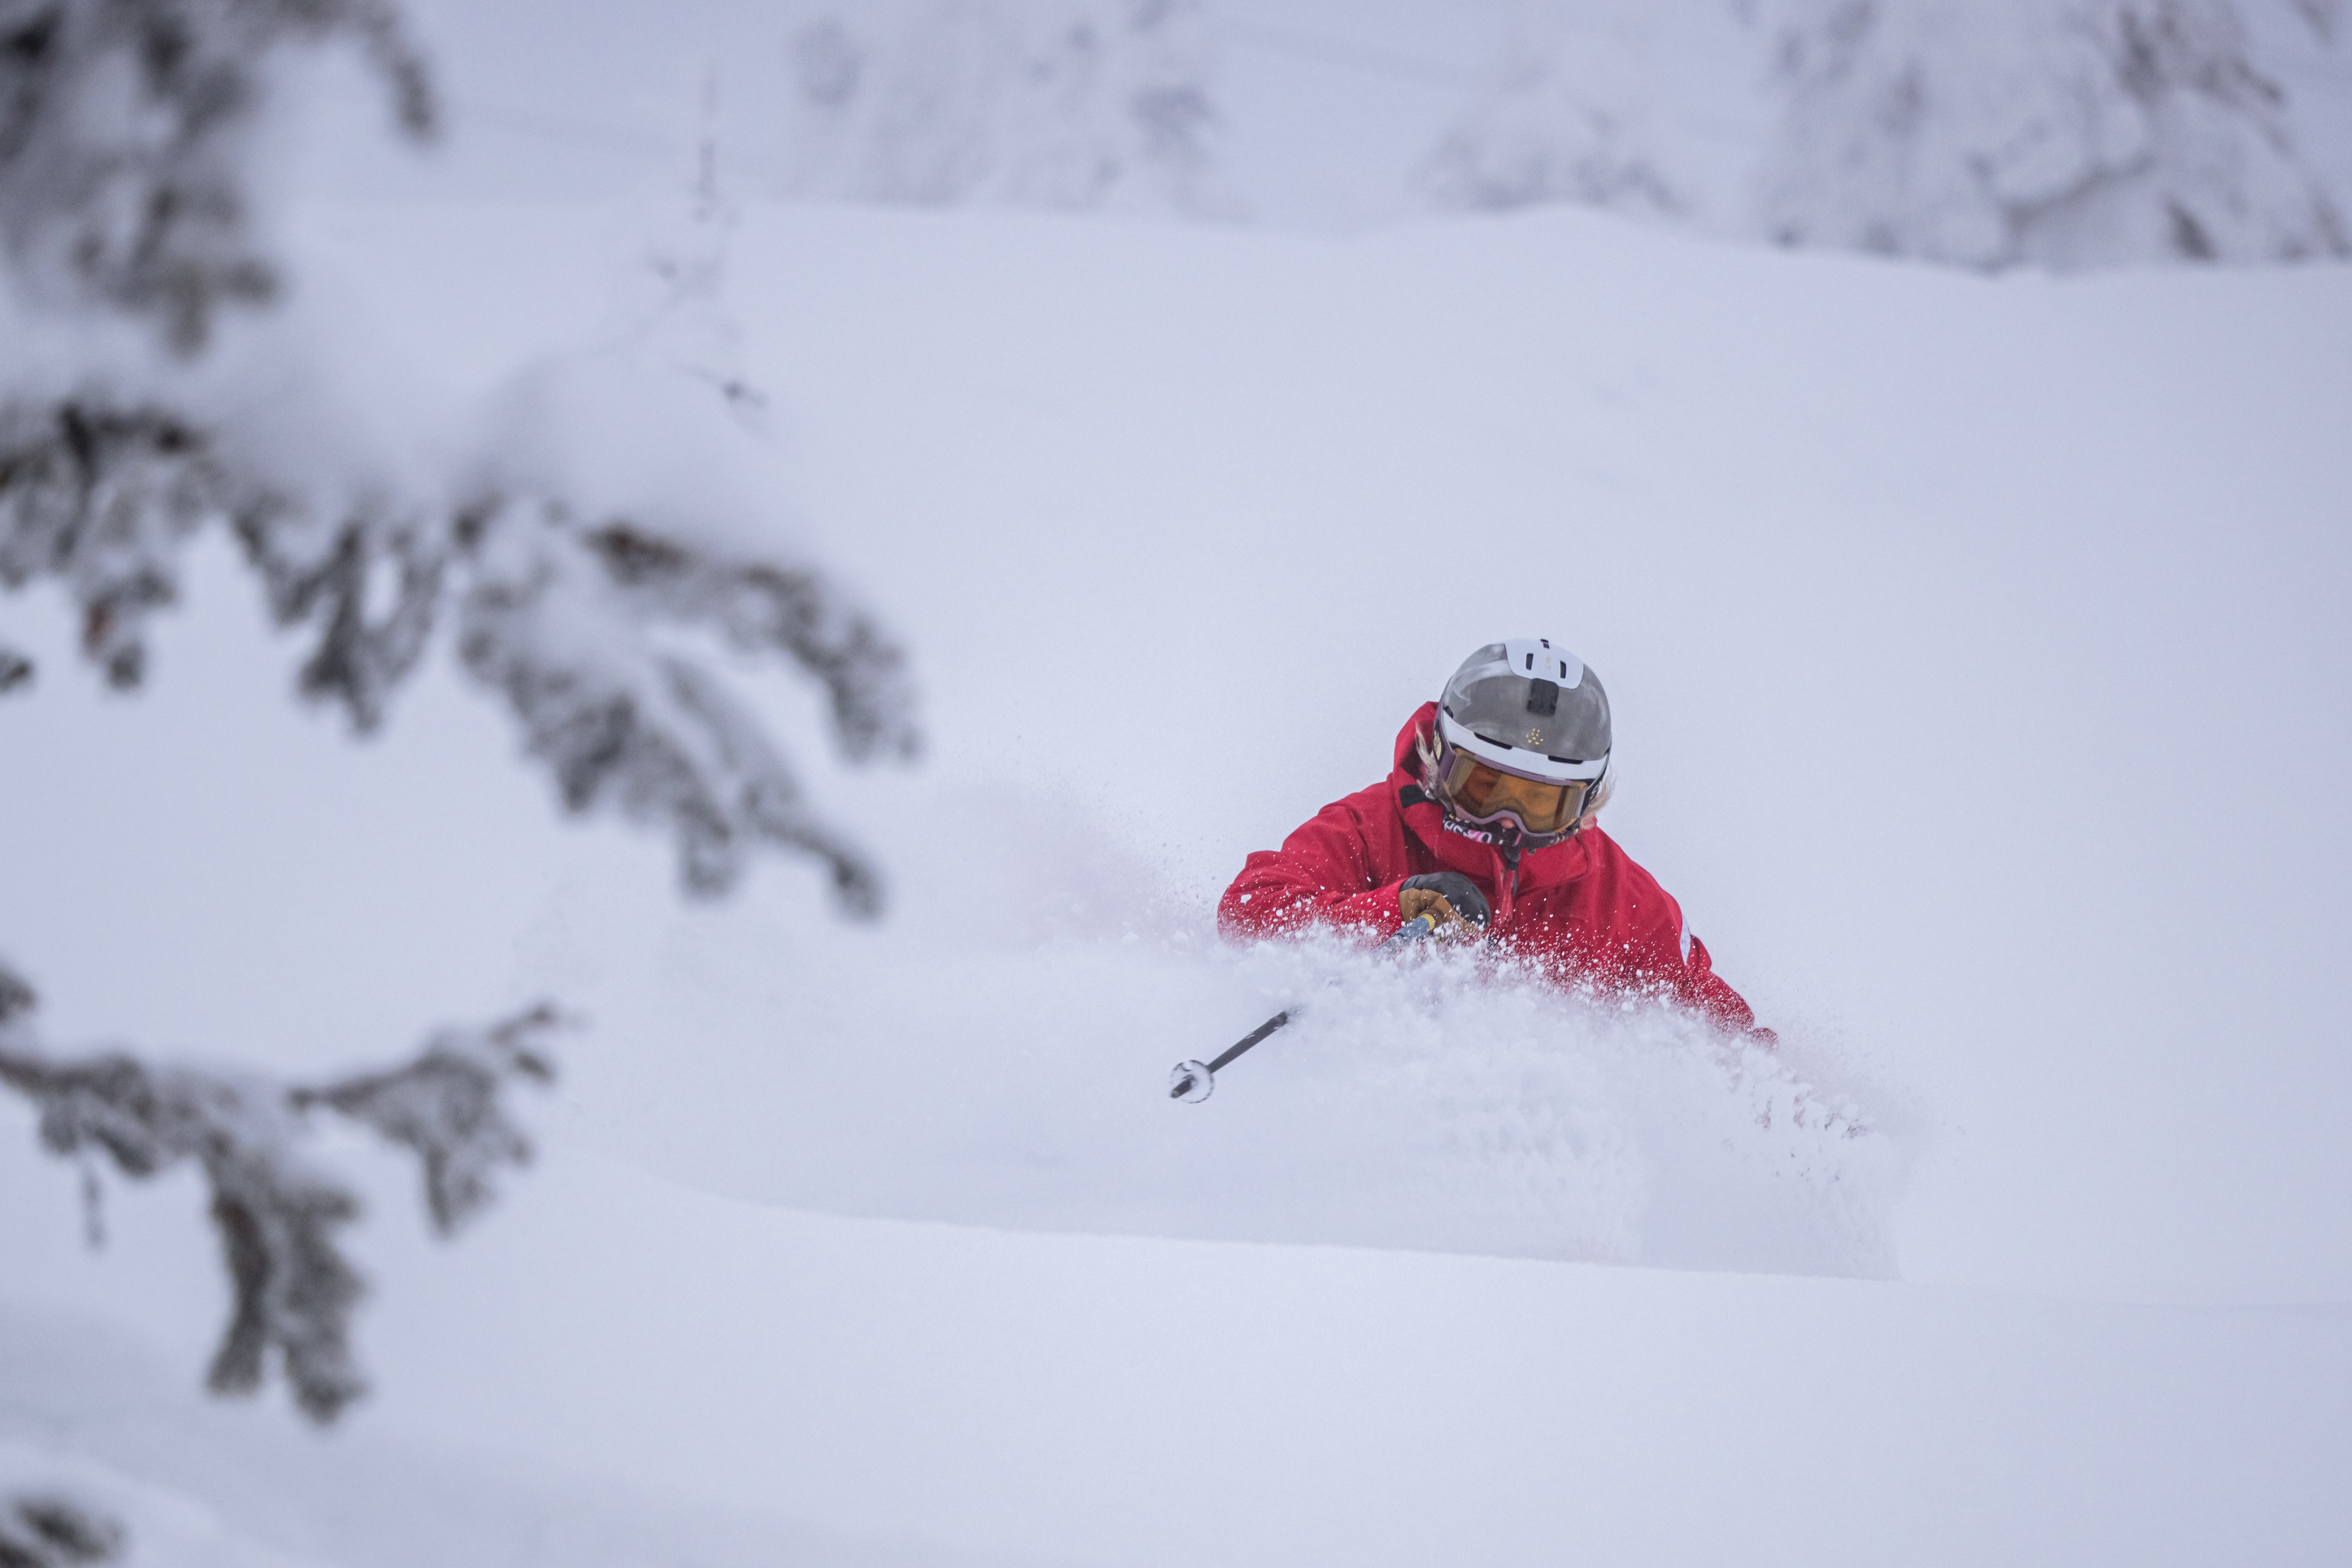 Okanagan ski hills describe overnight snowfall as ‘fluffy, perfect’